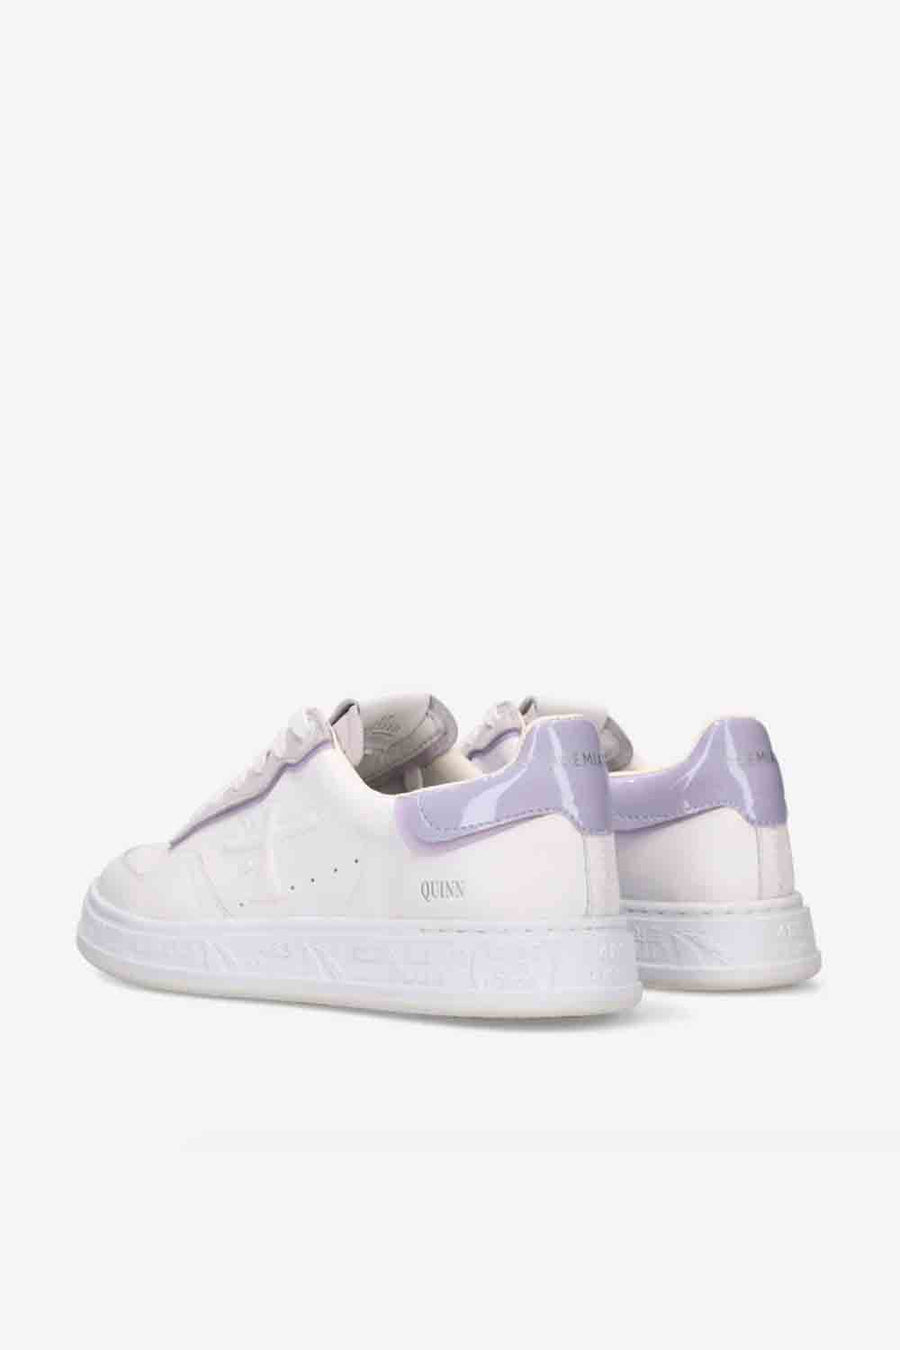 Sneakers Premiata color bianco e lilla quinnd 6322